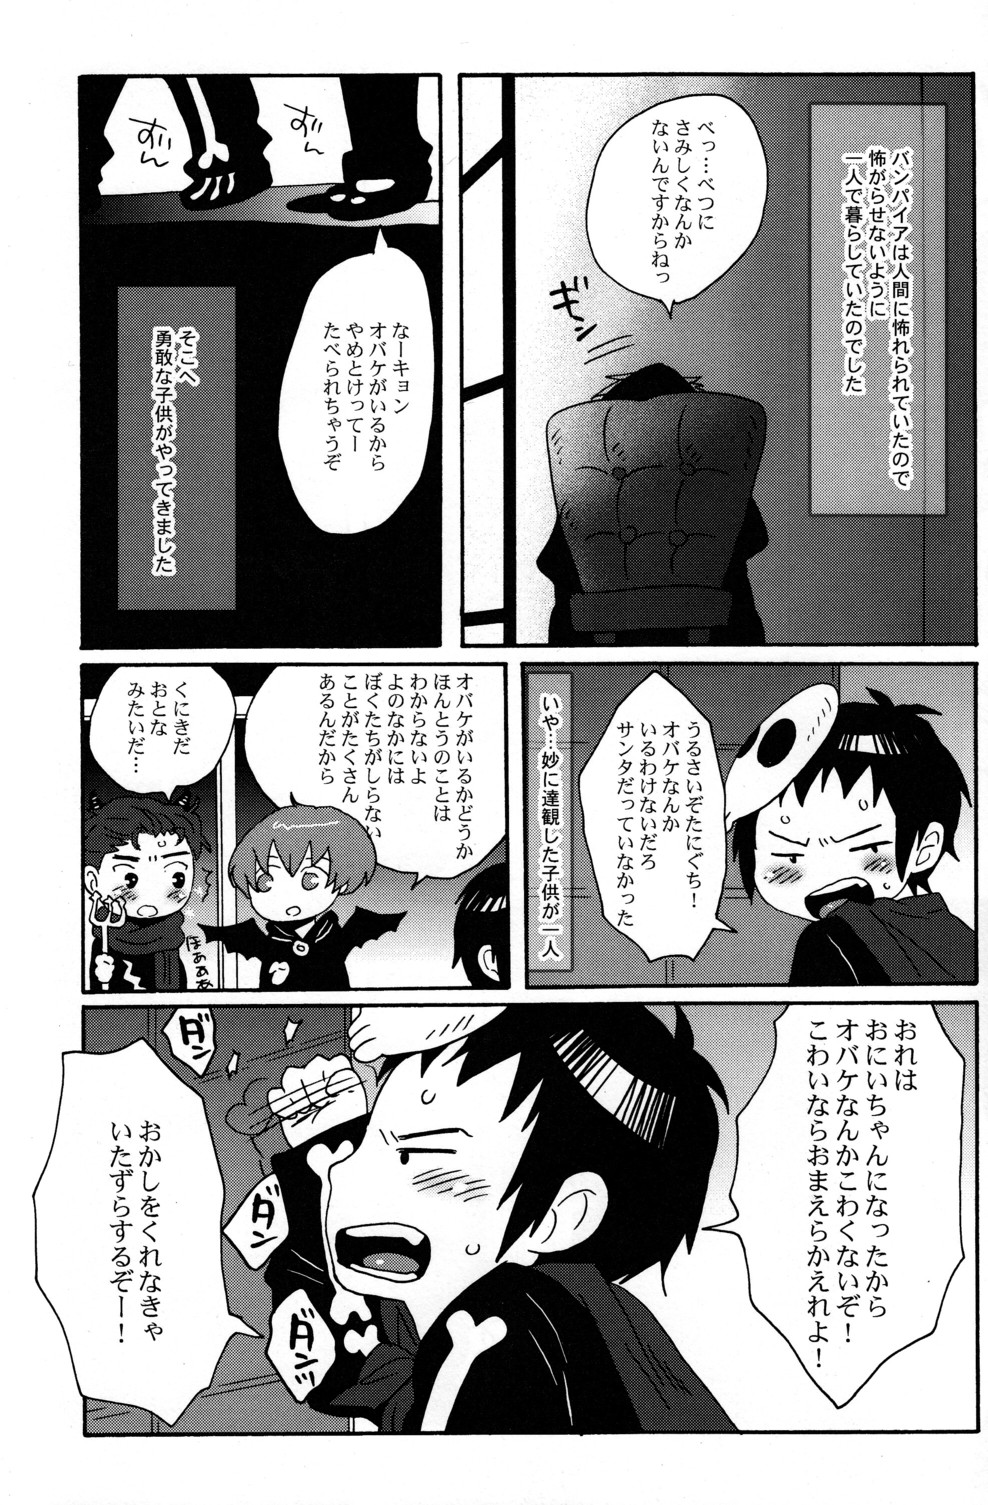 Mako Fuji (Zerohaku) - Okashi wo Agetara Itazura Shimasu yo? page 5 full